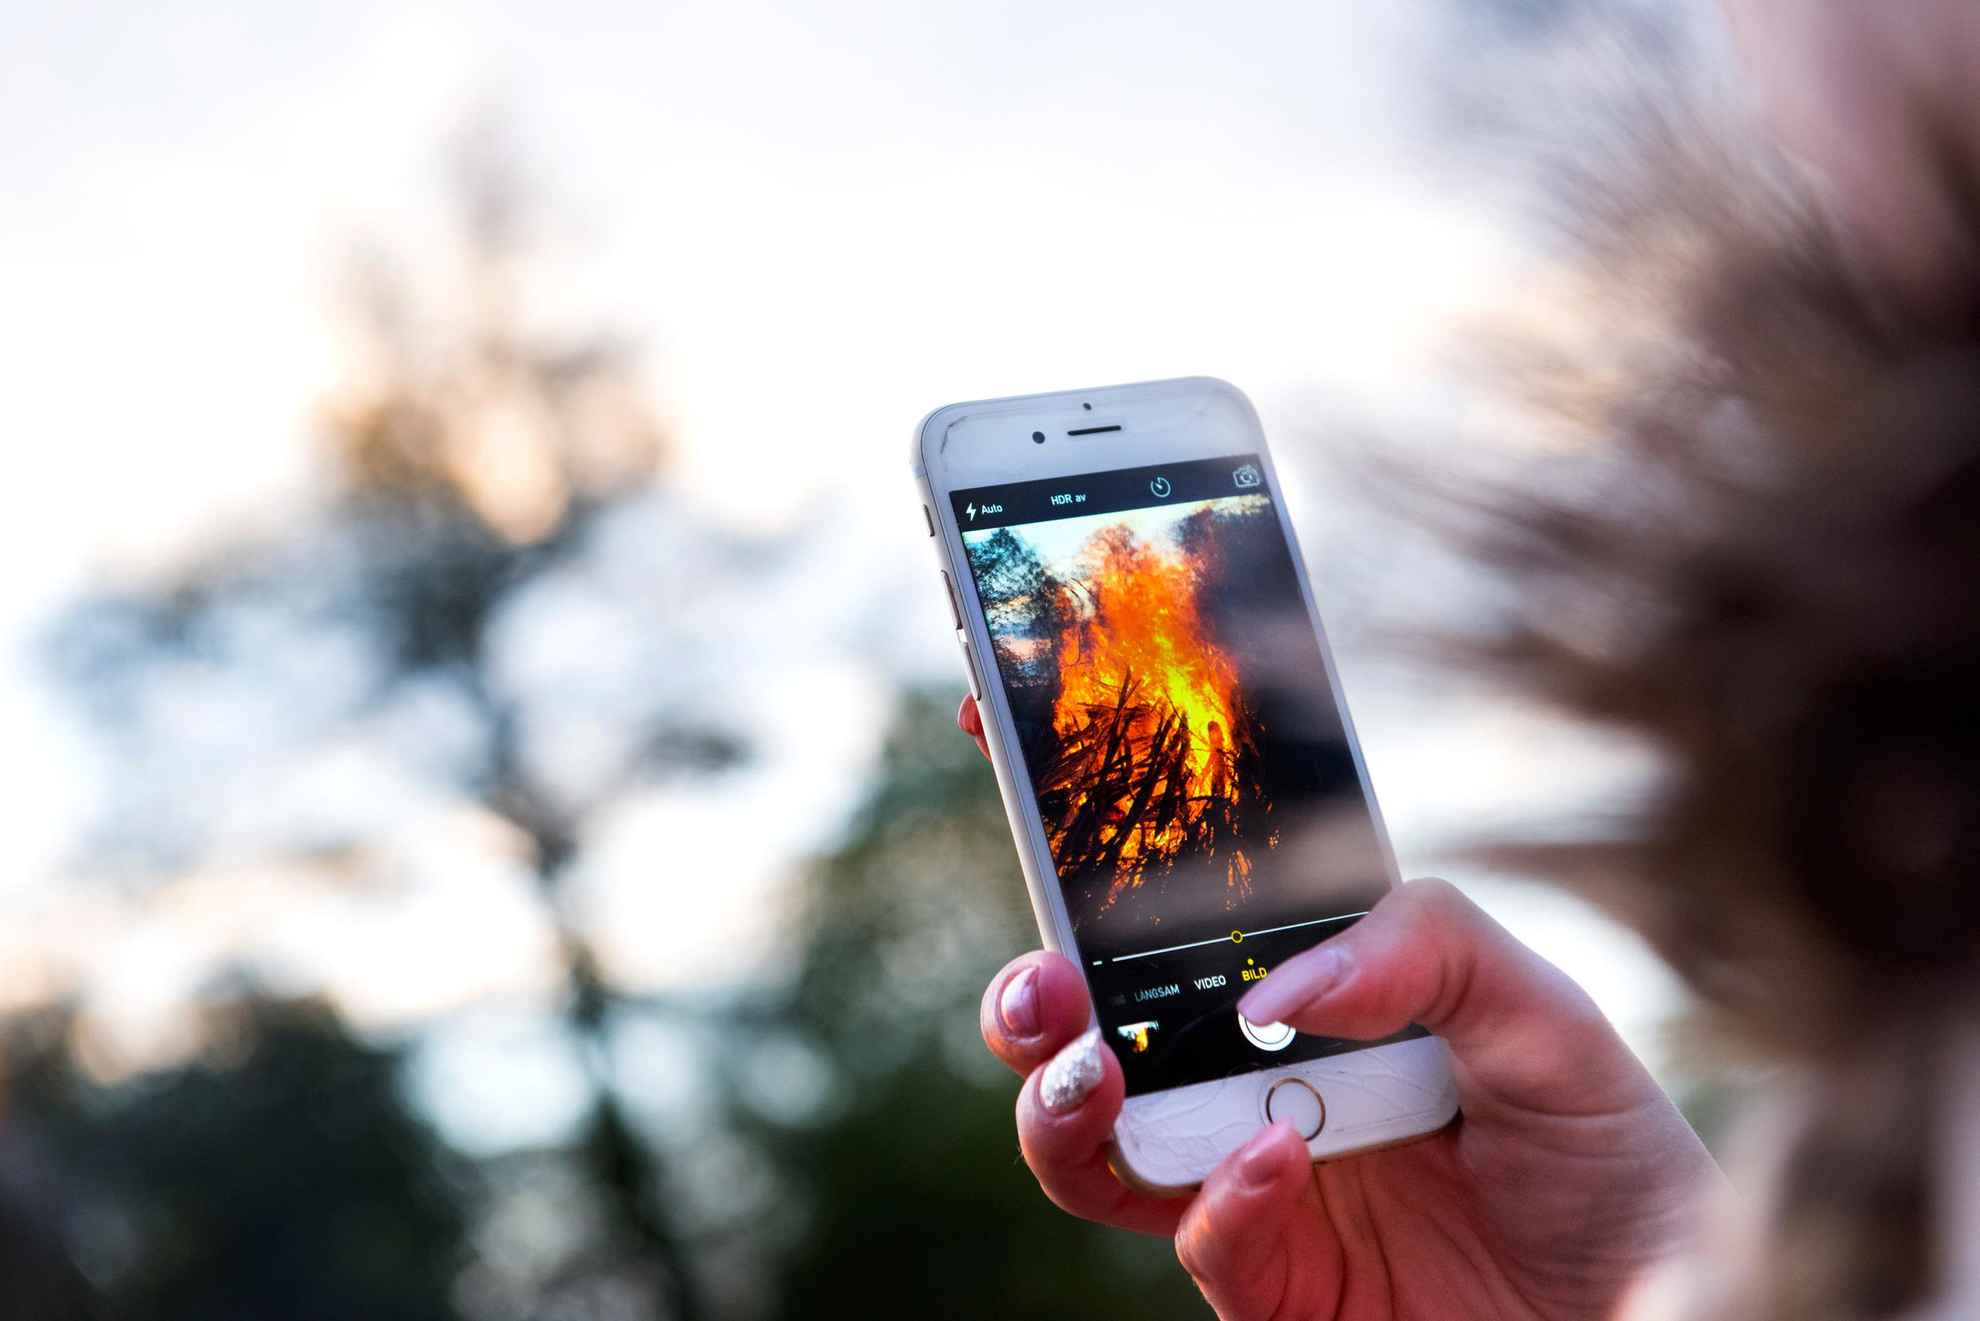 Persoon die zijn telefoon omhoog houdt tijdens het fotograferen van de brand op Walpurgis Eve.